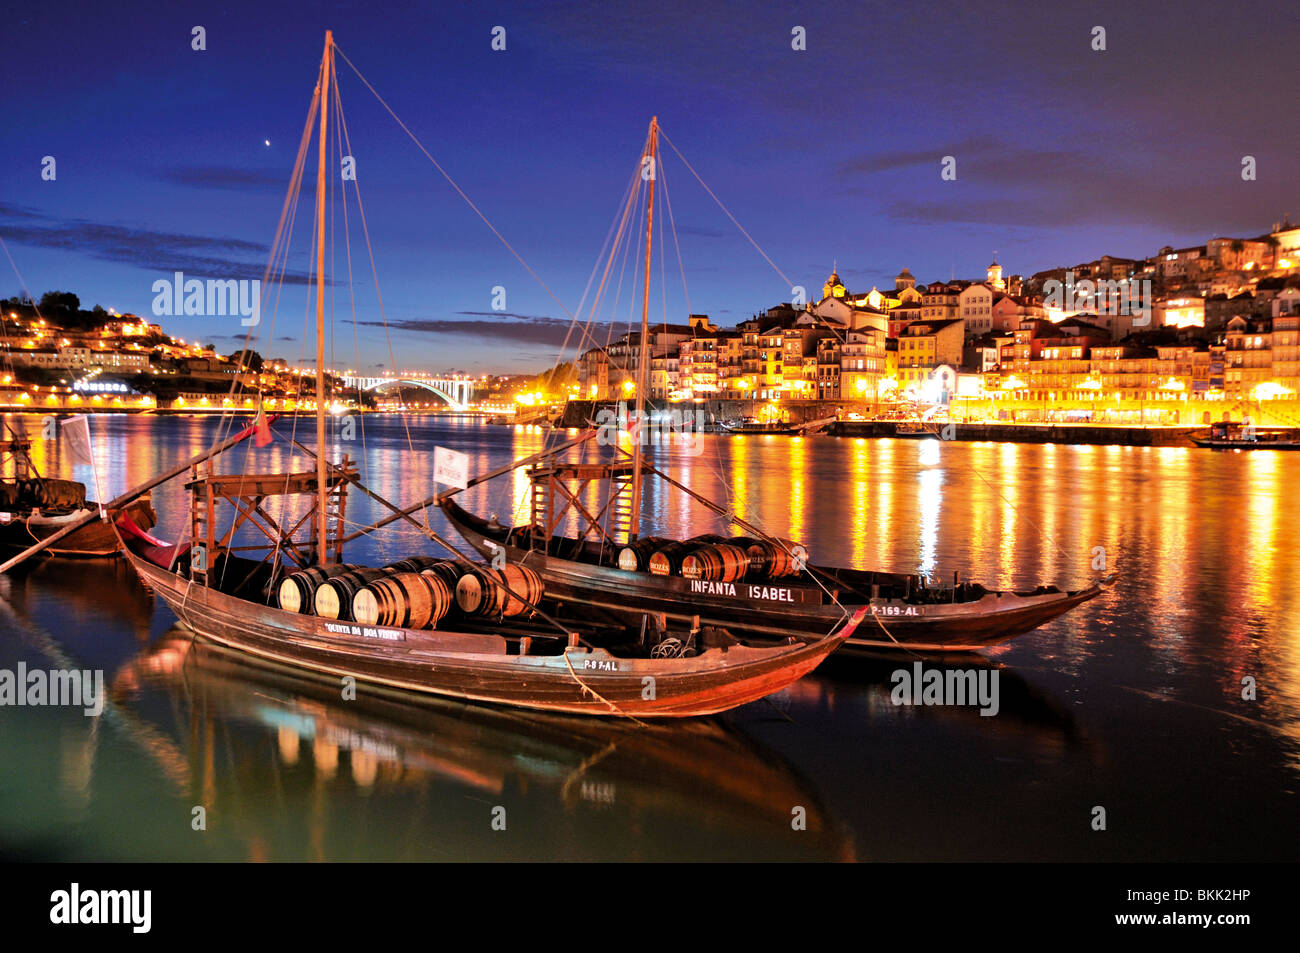 Portugal: Historical Port Wine ships at river Douro in Oporto Stock Photo